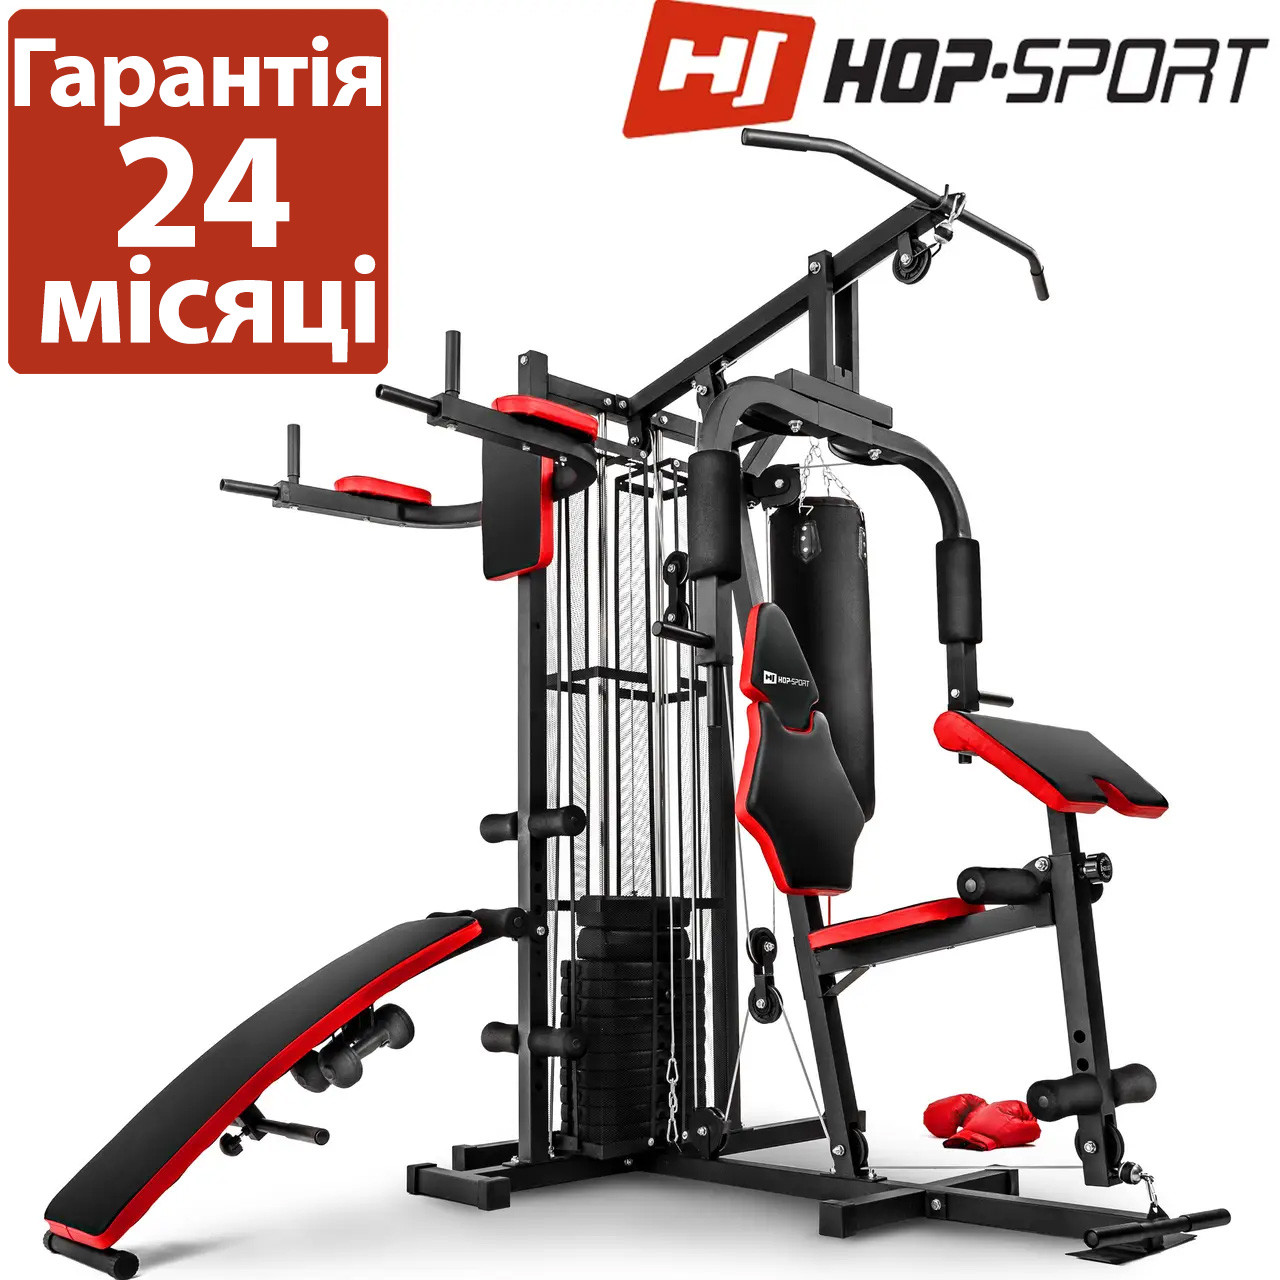 Силова станція Hop-Sport HS-1054K фітнес фанцію, мультистанция, Для м'язів грудей, рук, ніг, спини